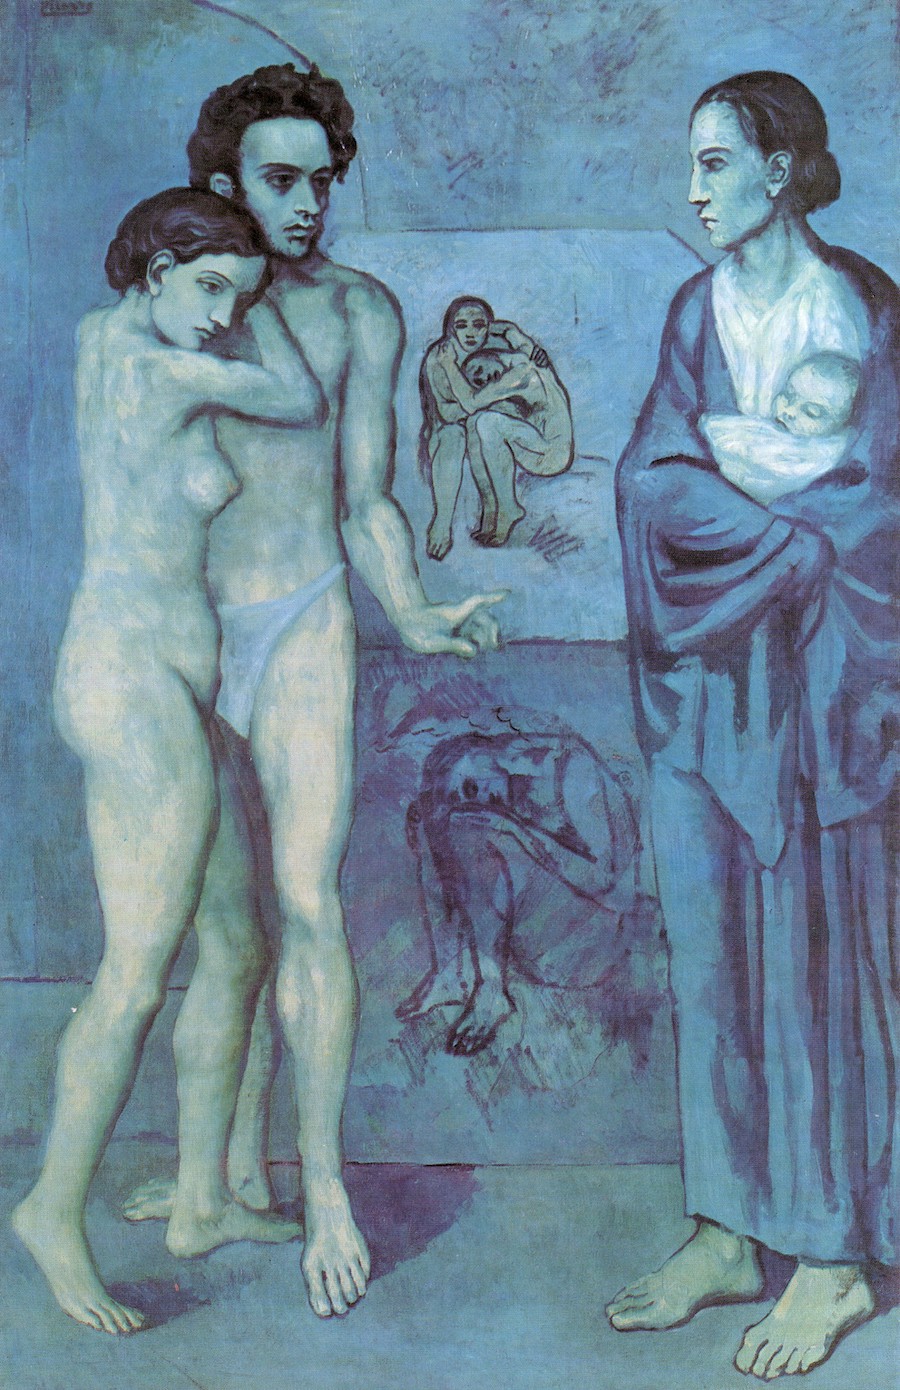 Похожая обнаженная женщина на другой картине Пикассо&nbsp;&mdash; &laquo;Жизнь&raquo;, 1903 год